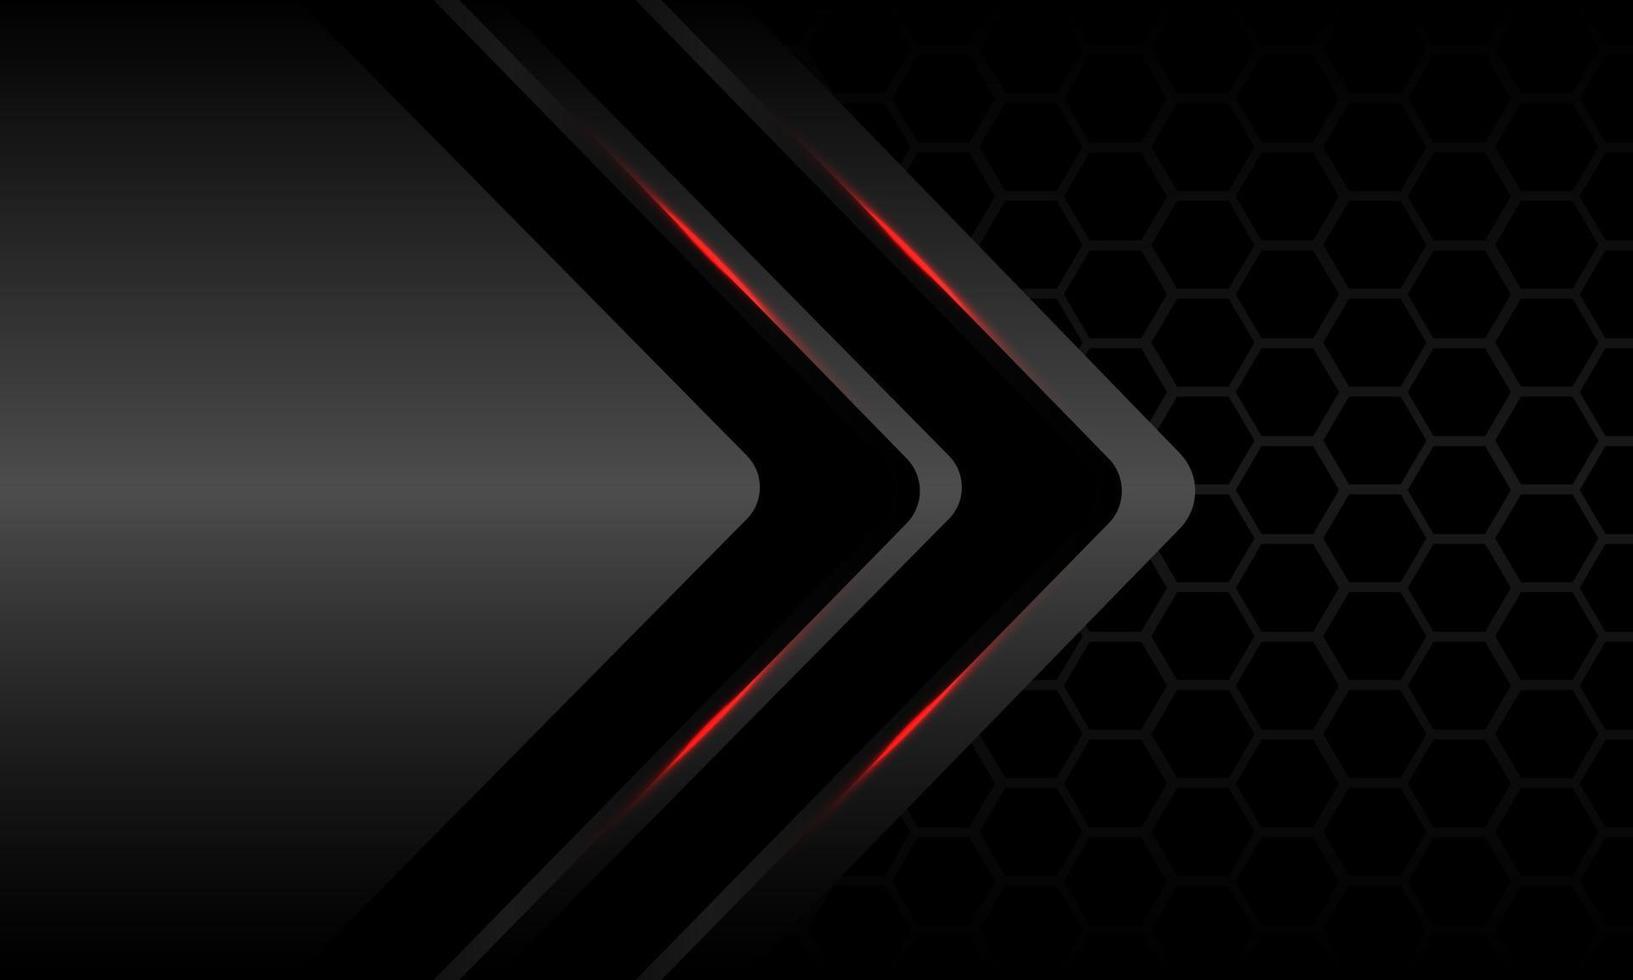 astratto metallico doppia freccia nera direzione della luce rossa grigio scuro maglia esagonale design moderno sfondo futuristico vettore